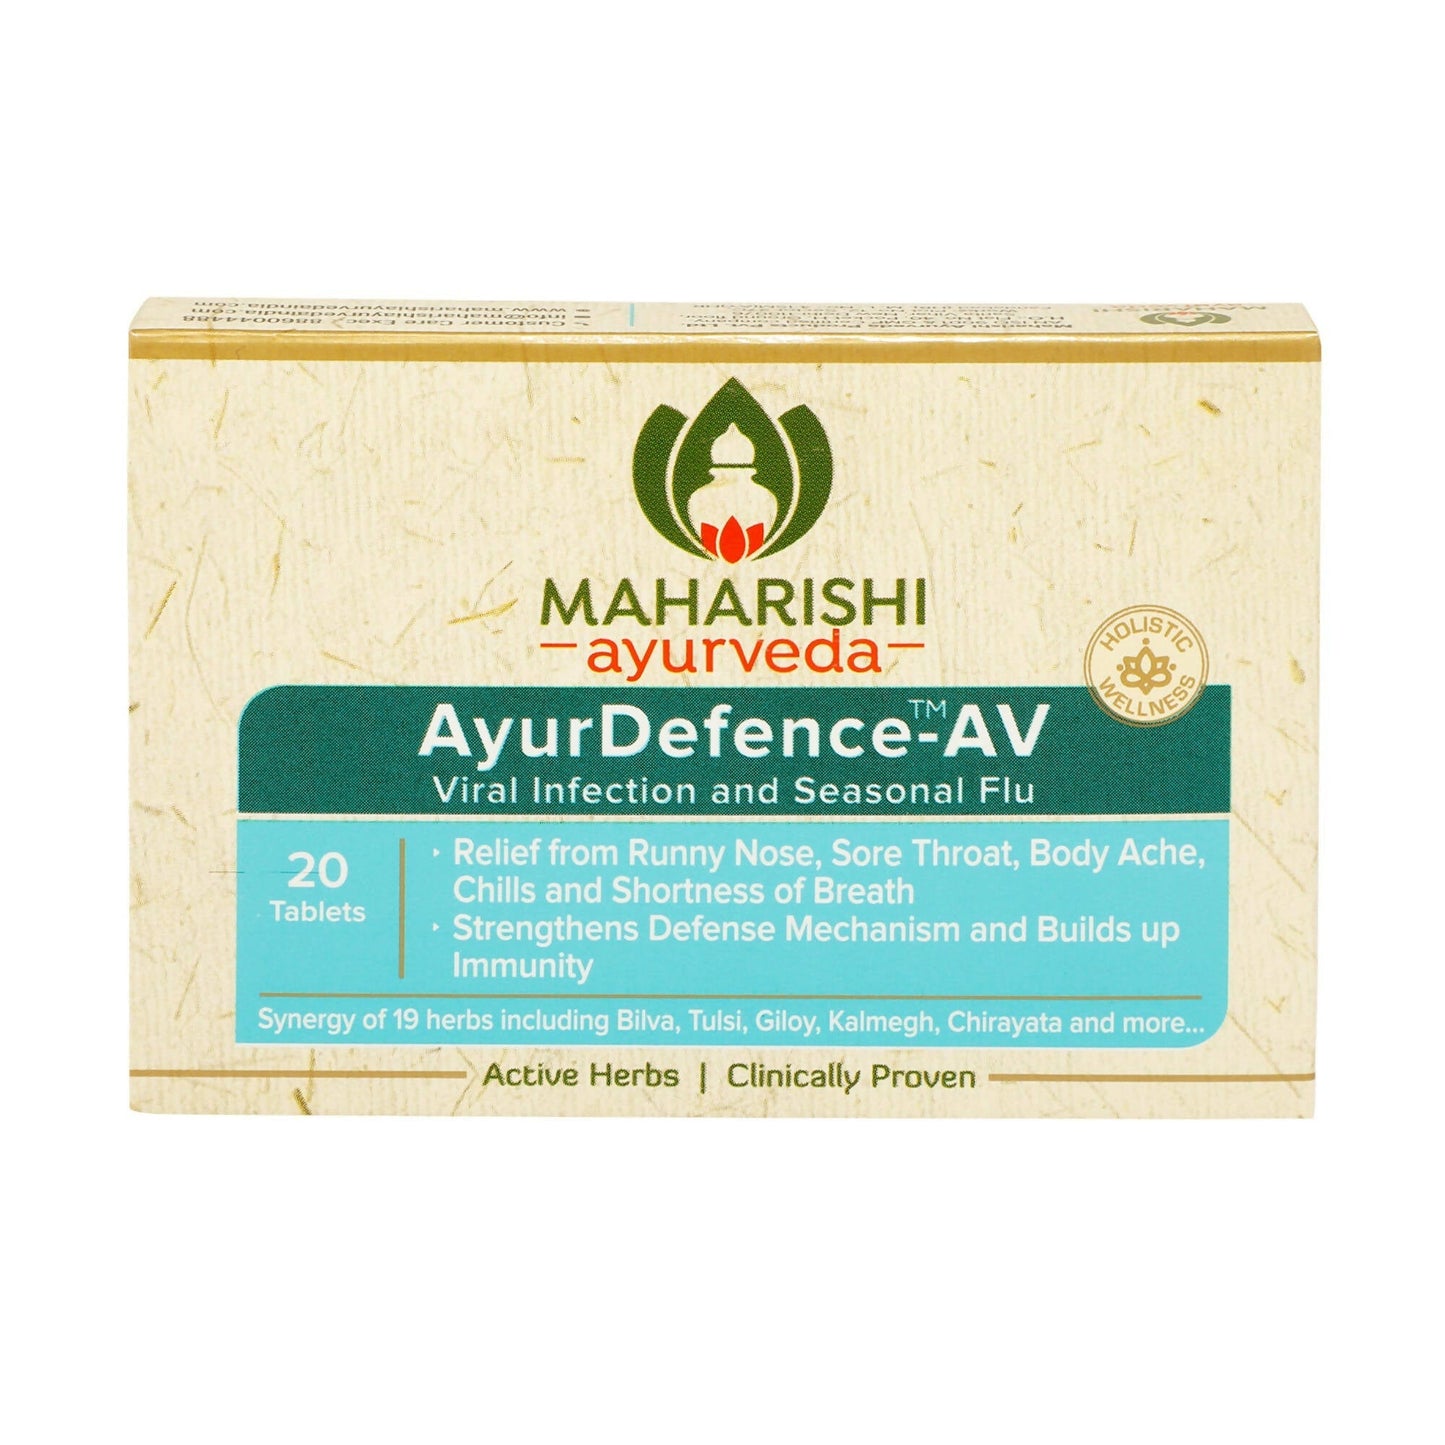 Maharishi Ayurveda AyurDefence-AV Tablets